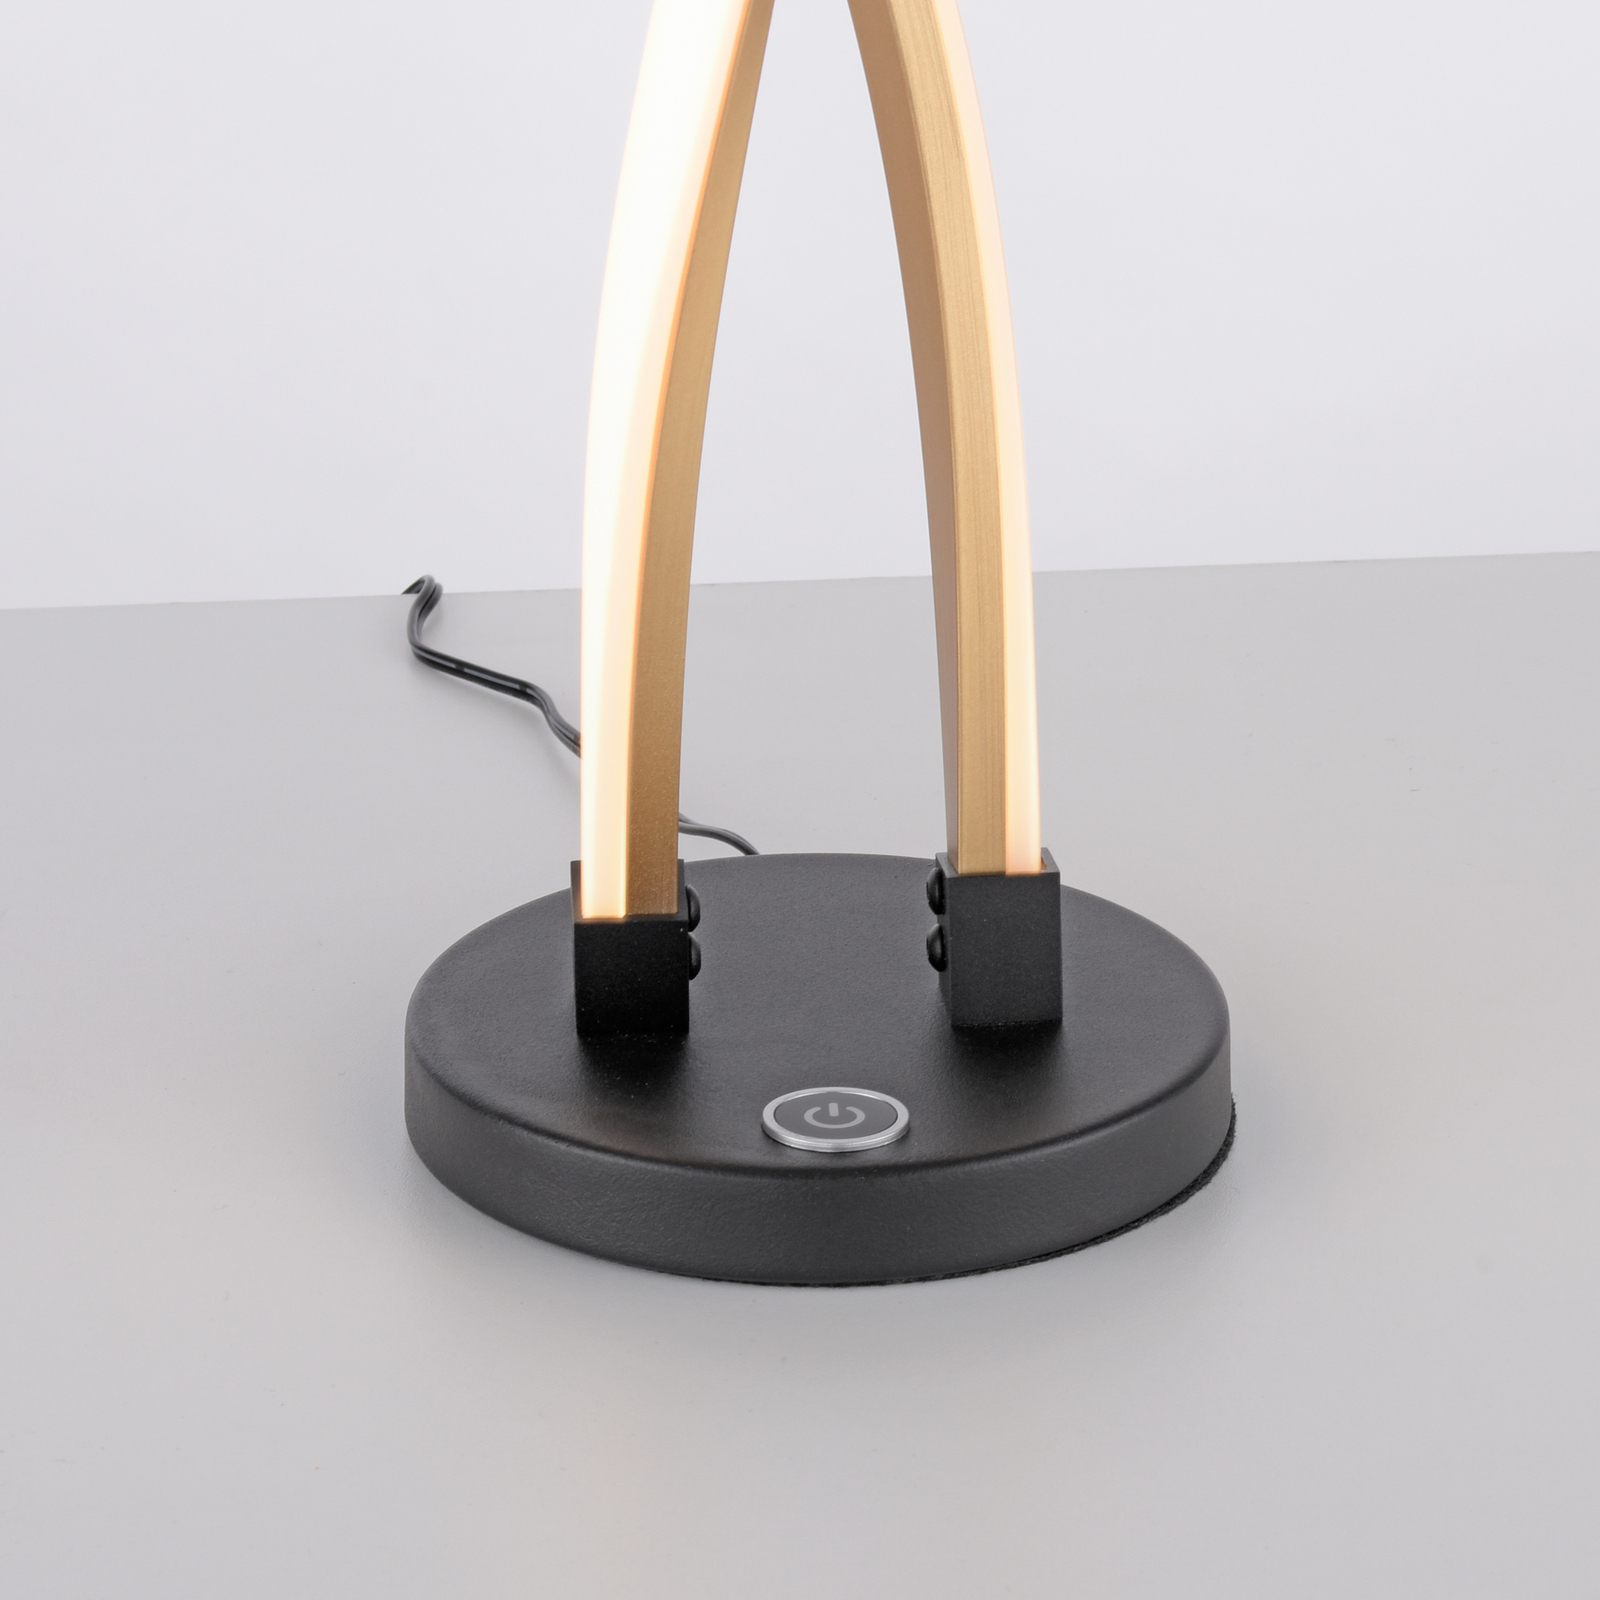 Paul Neuhaus Polina stolová LED lampa, zlatá